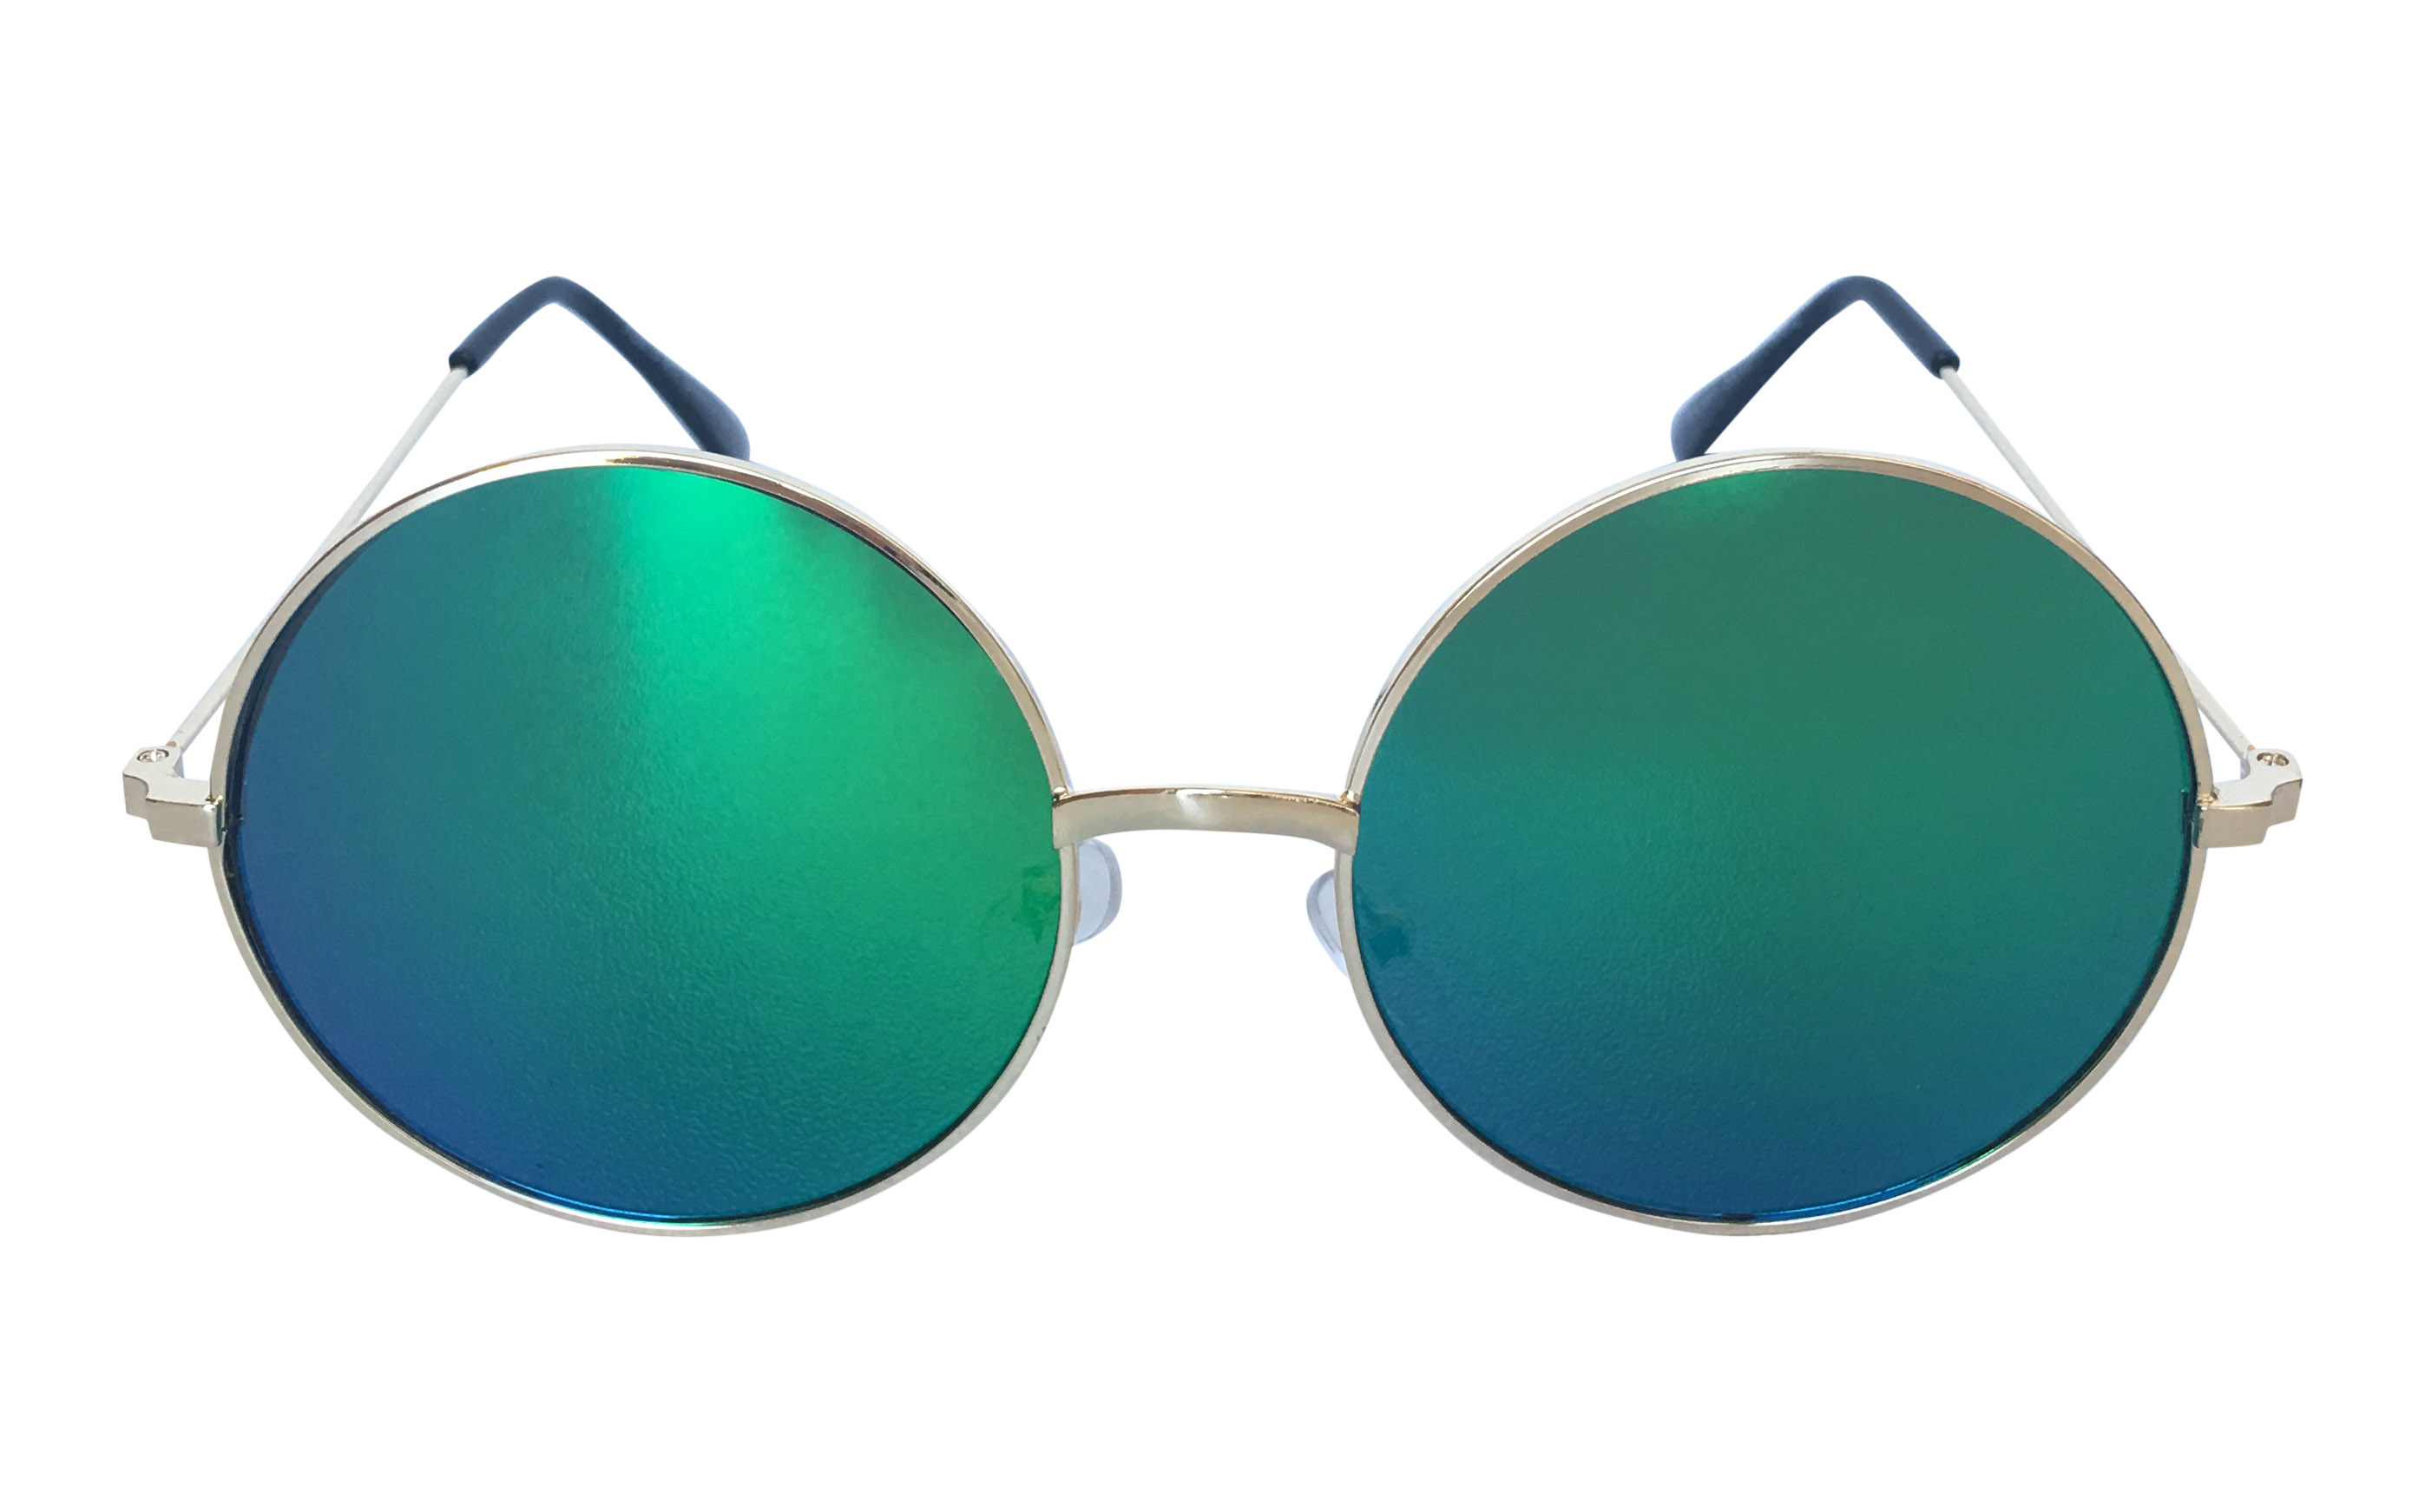 Guldfarvet rund solbrille med flade blå-grønne linser - Design nr. 3308